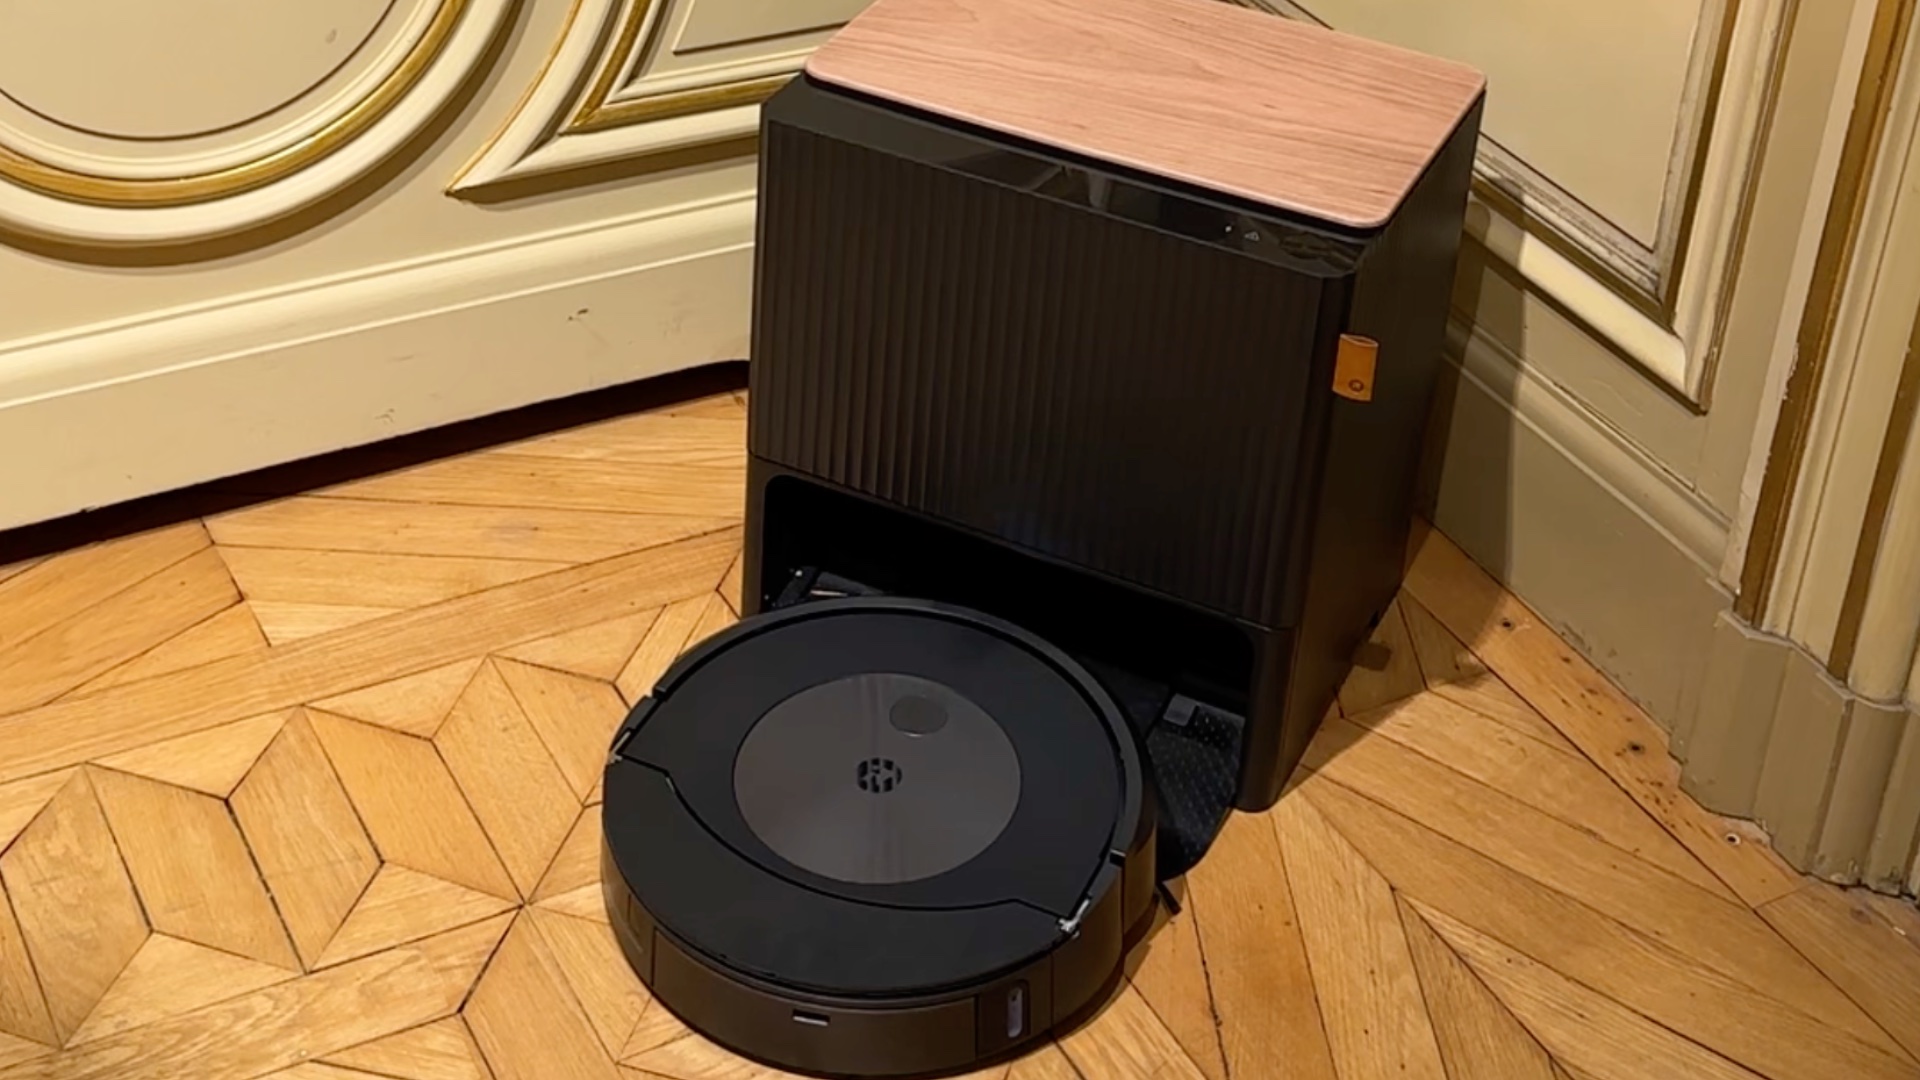 Robot aspirateur Roomba d'iRobot : tous les derniers modèles